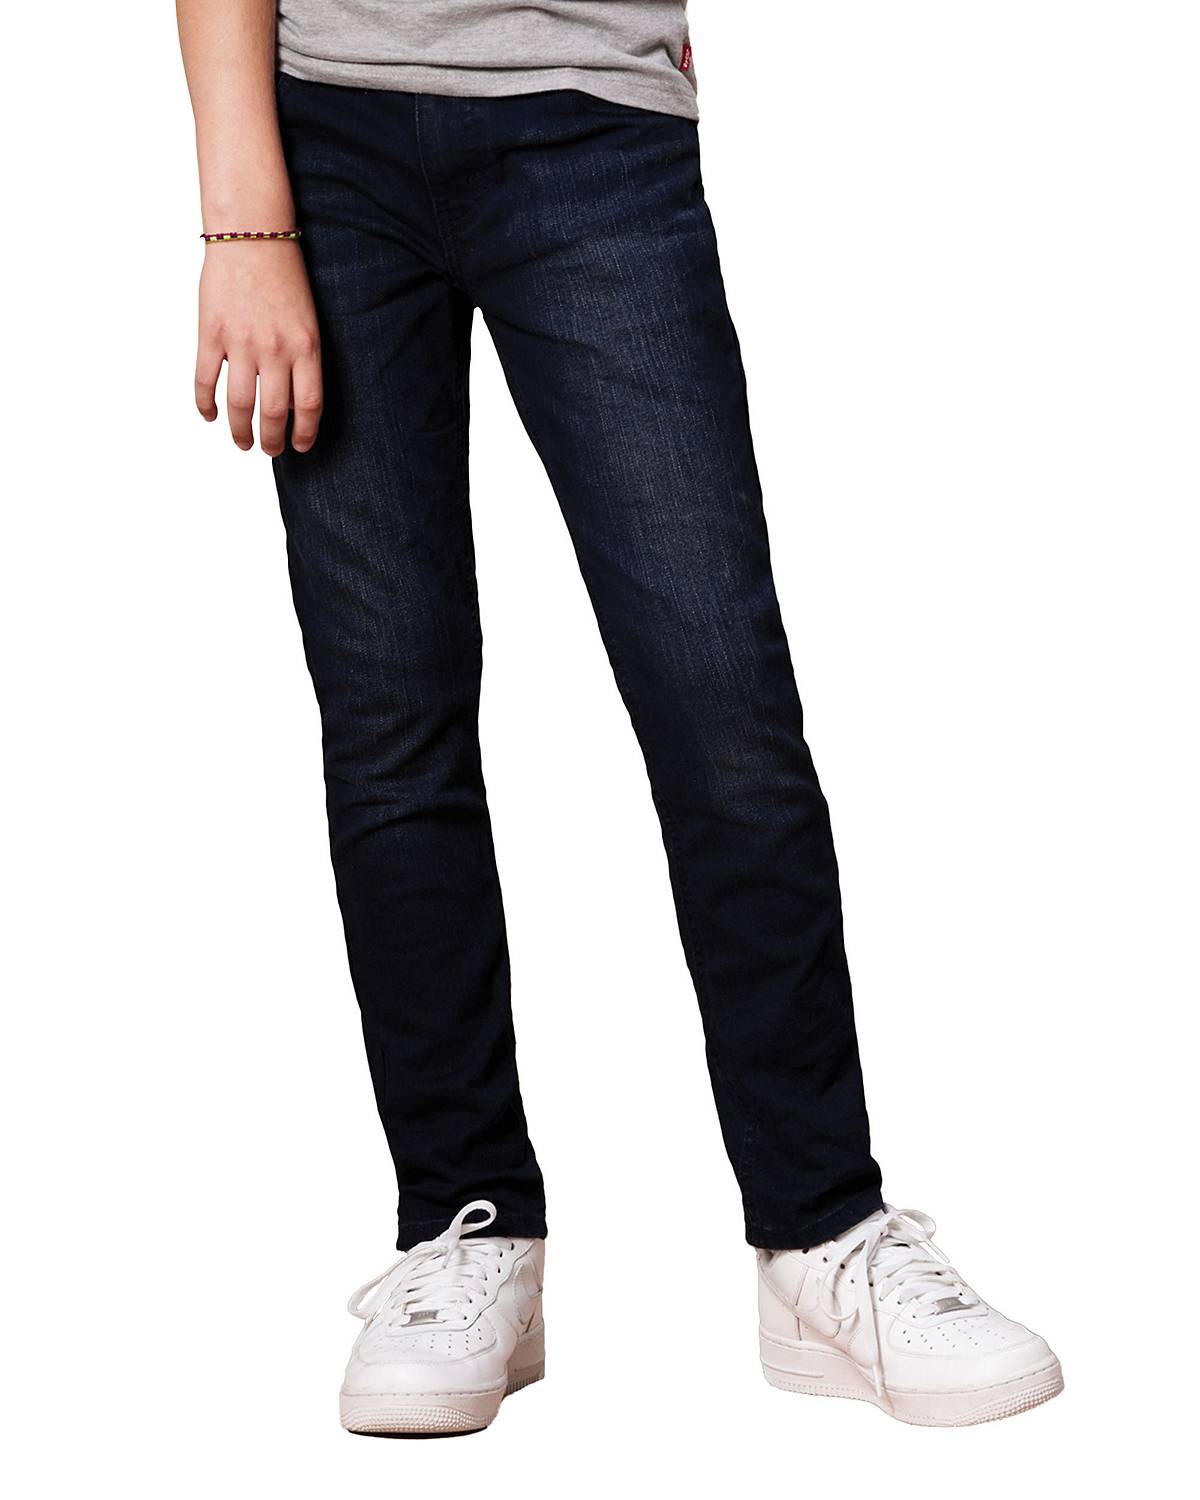 Boy wearing 512™ Slim Taper Fit Jeans